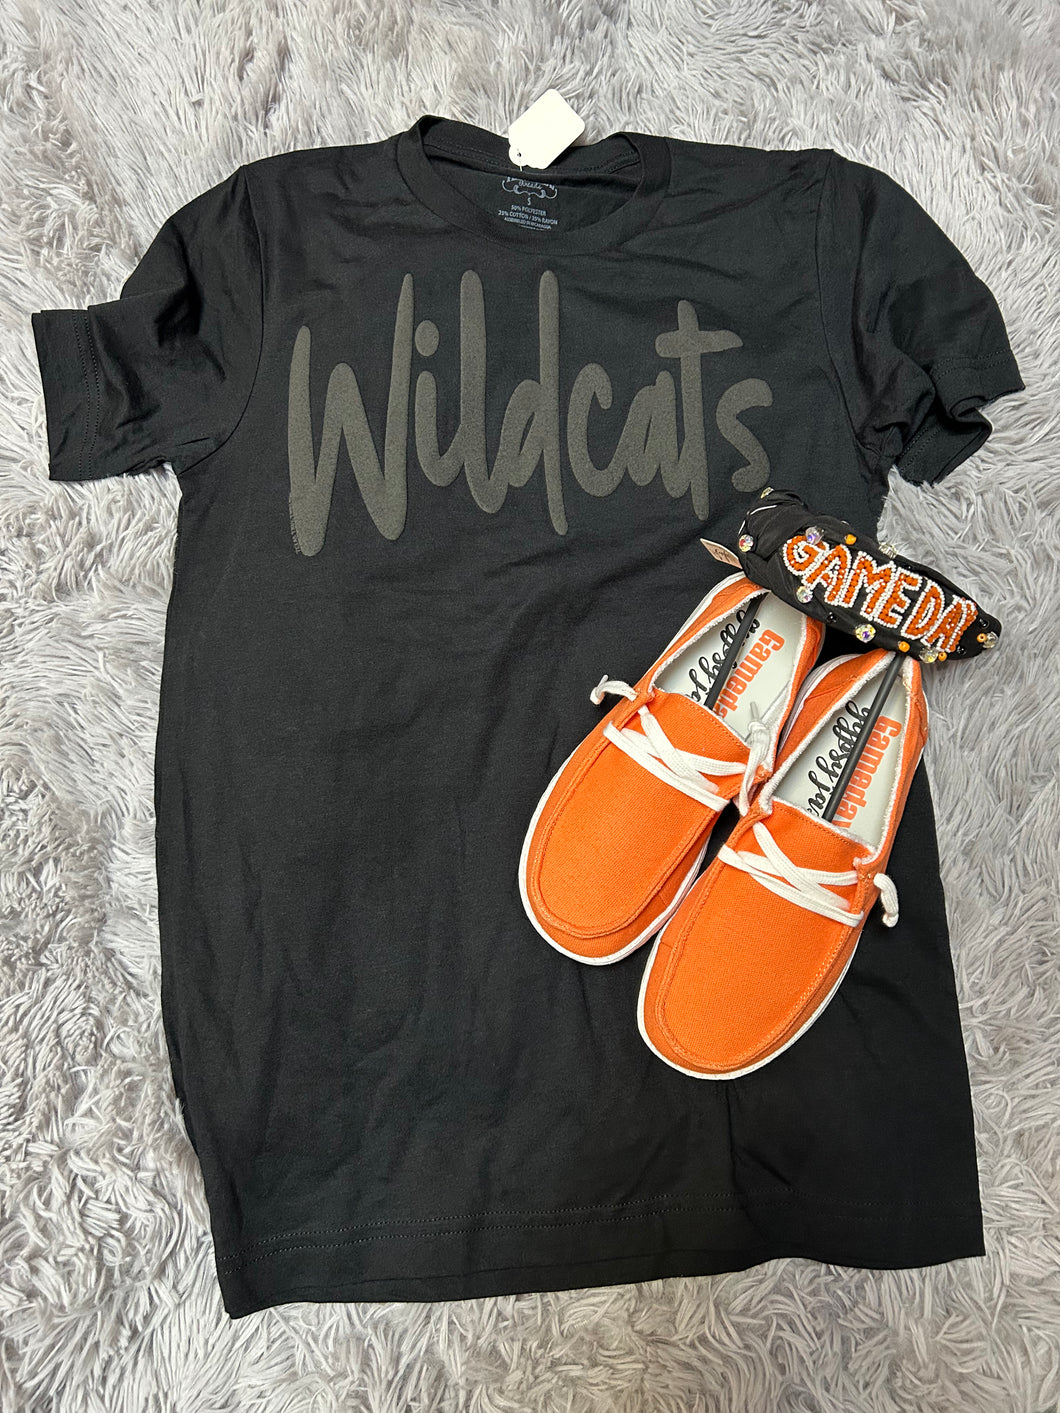 Wildcat puff tshirt